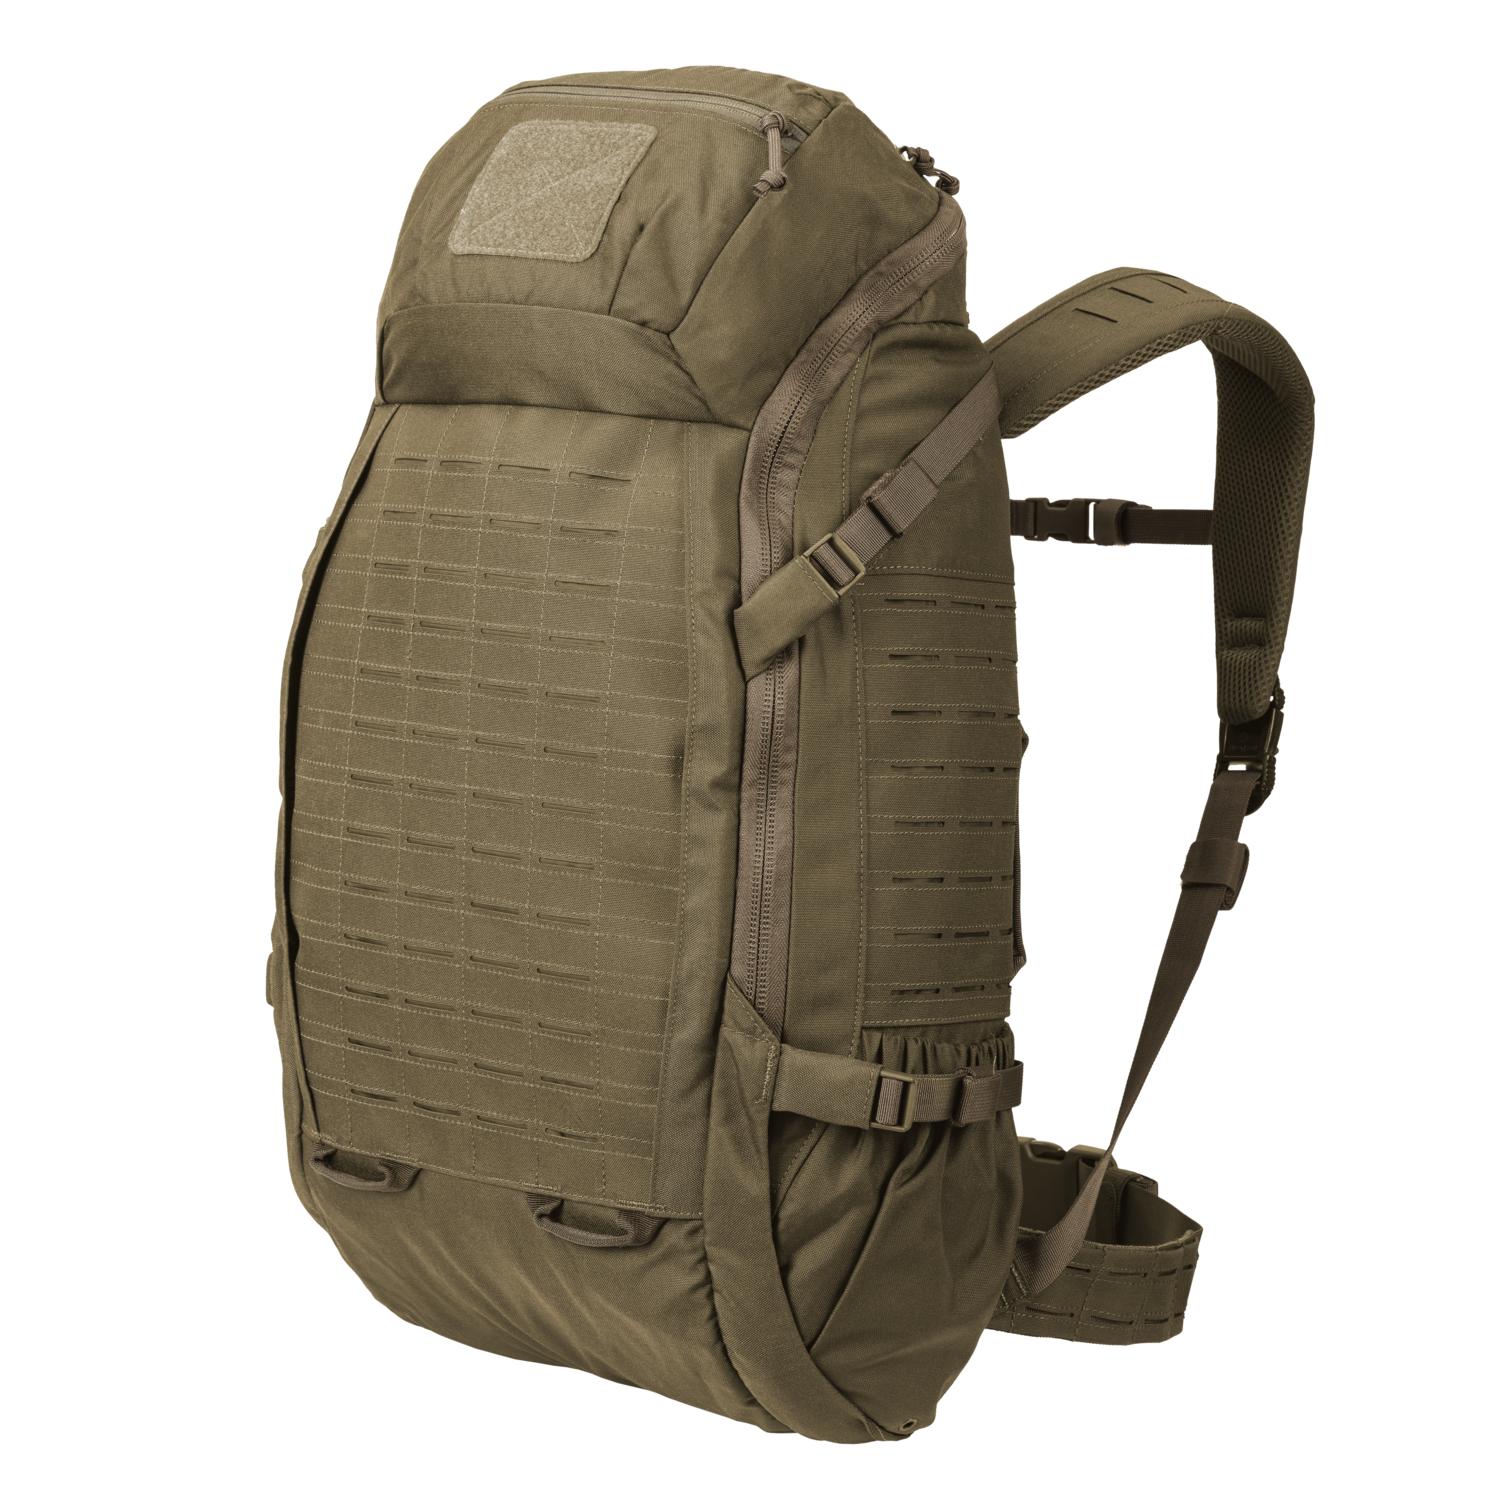 Halifax Medium Backpack 24,8 x 7,9 x 12,2"